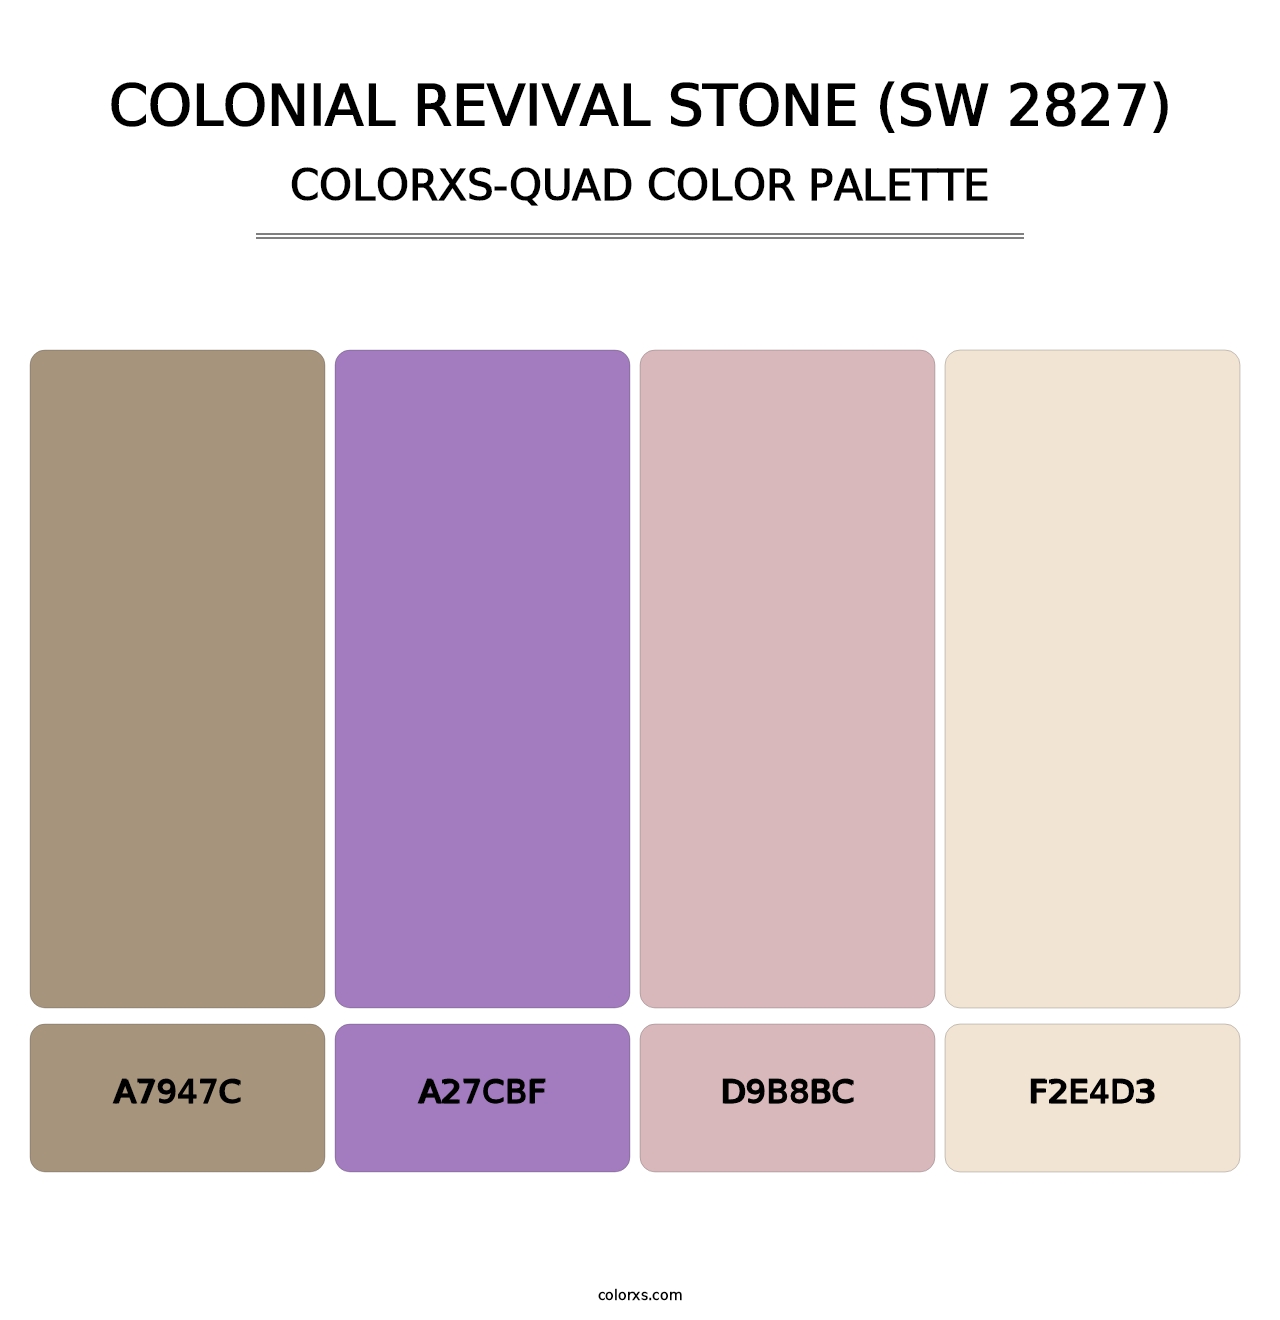 Colonial Revival Stone (SW 2827) - Colorxs Quad Palette